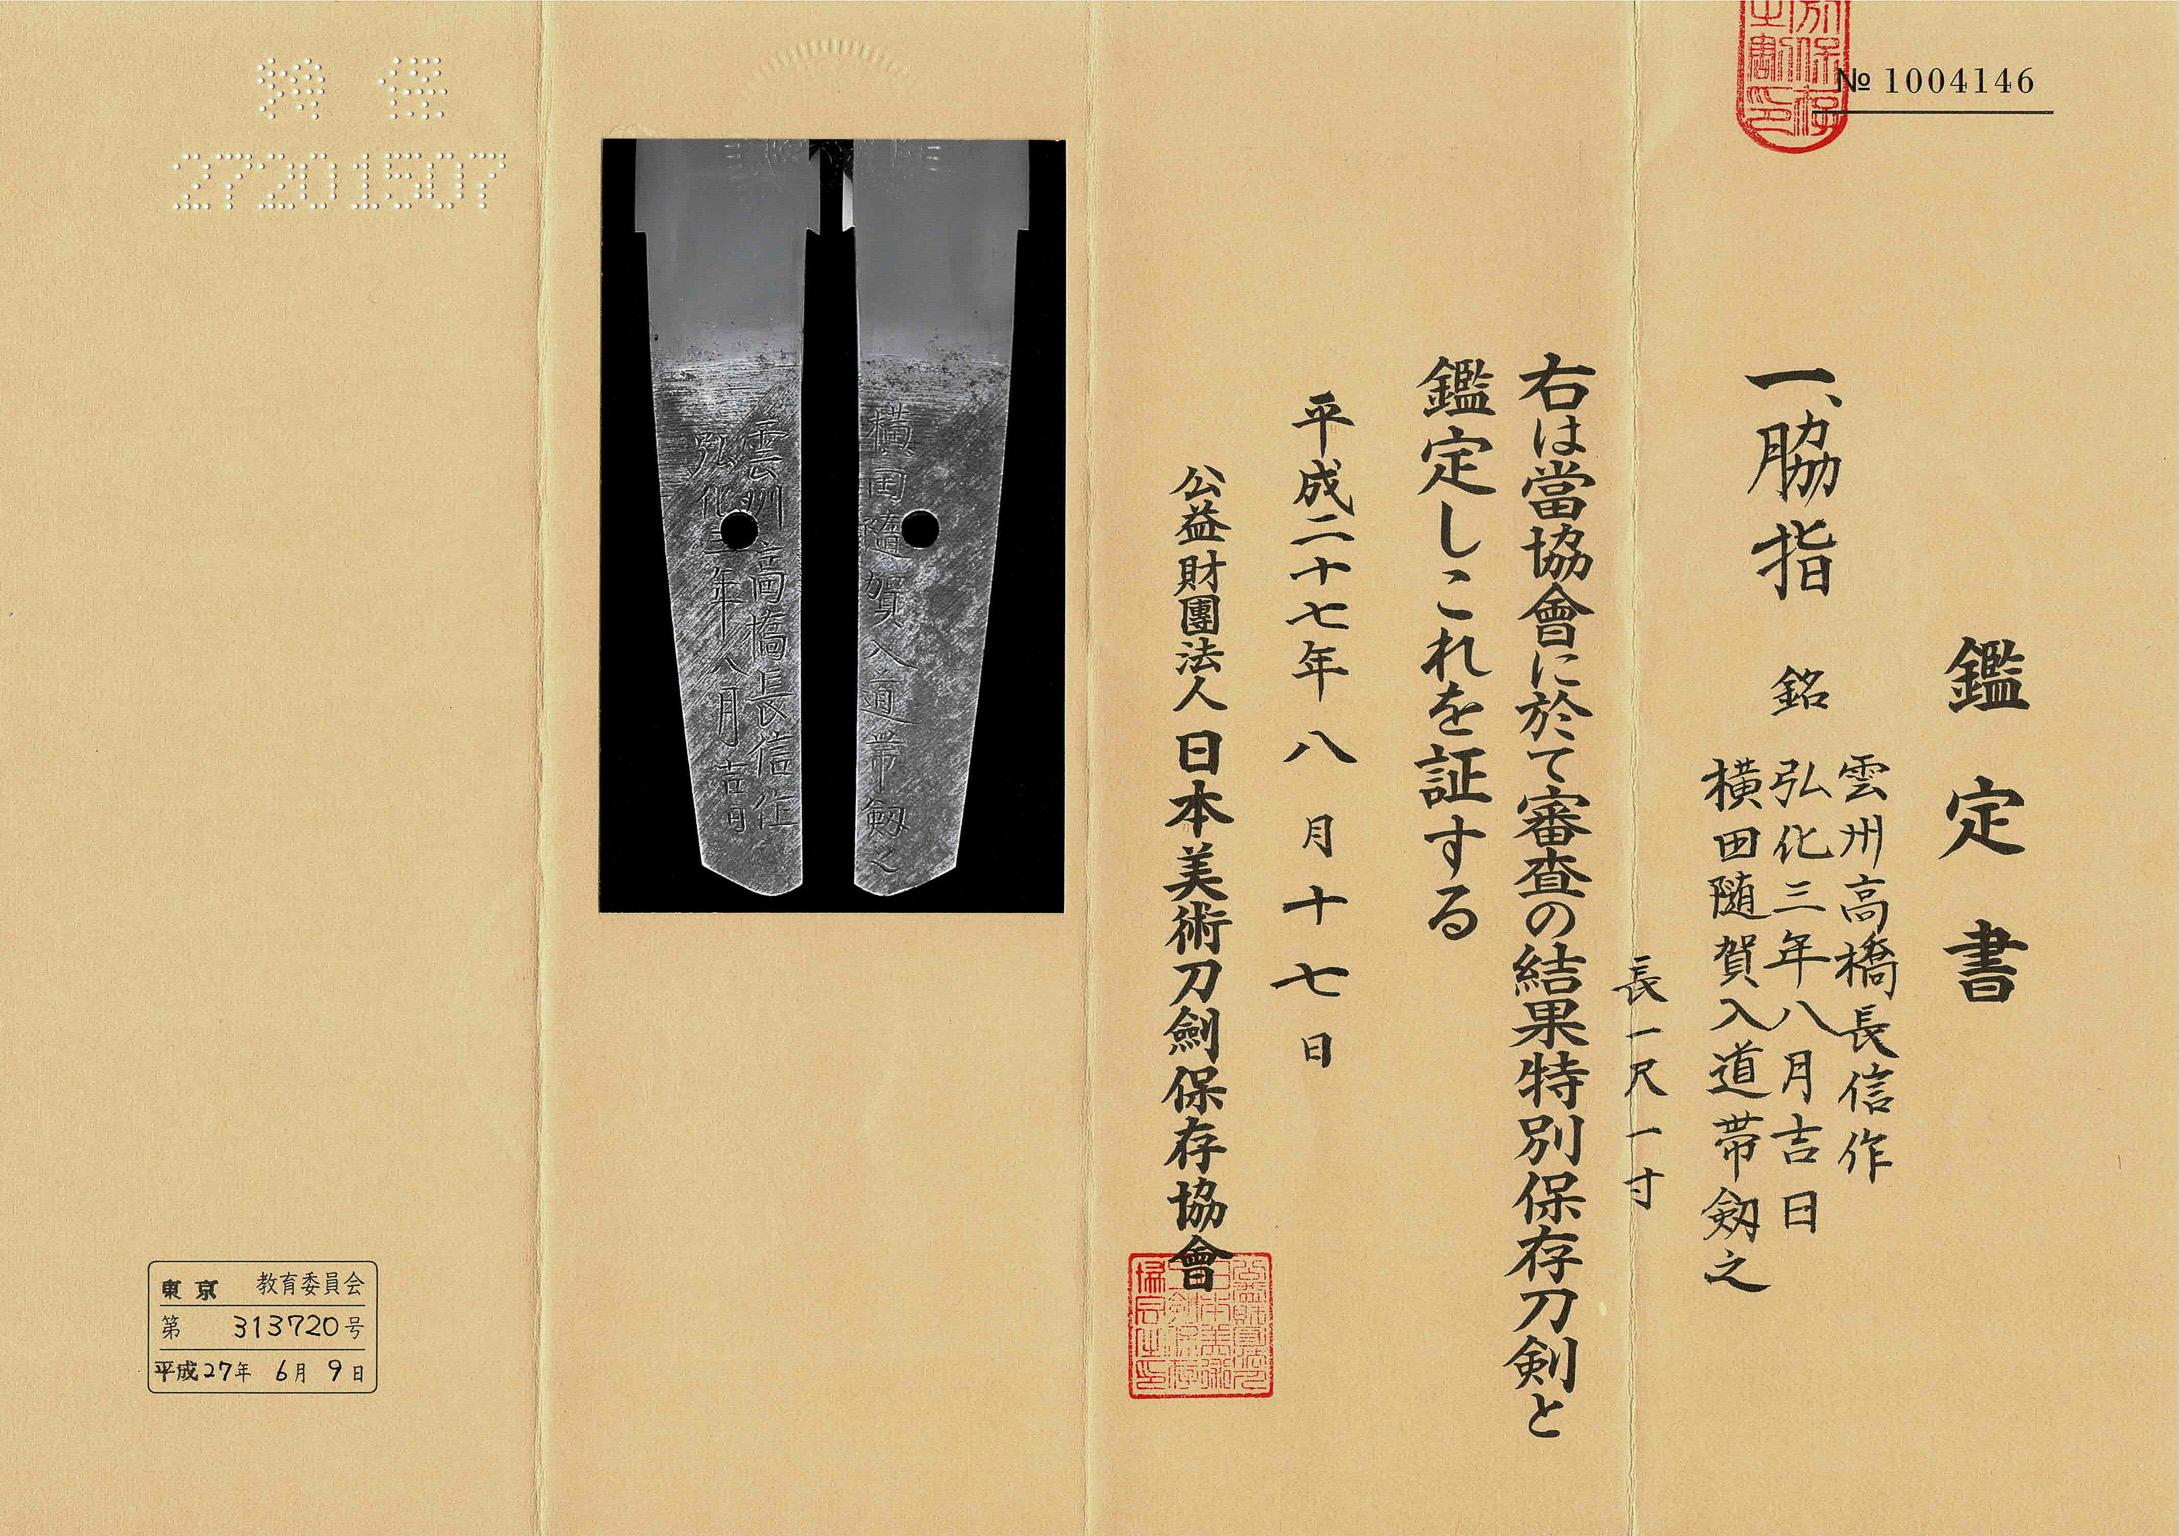 A Shinto Sunnobi Tanto
by Takahashi Naganobu, 1846

Unsho Takahashi Naganobu / A lucky day of August Koka san-nen (1846)
Yokota became monk with this sword
-
NBTHK Tokubetsu Hozon Token
-
Published: Yoshihiro Abe, Unsho Tosho Takahashi Tsumbo-shi -